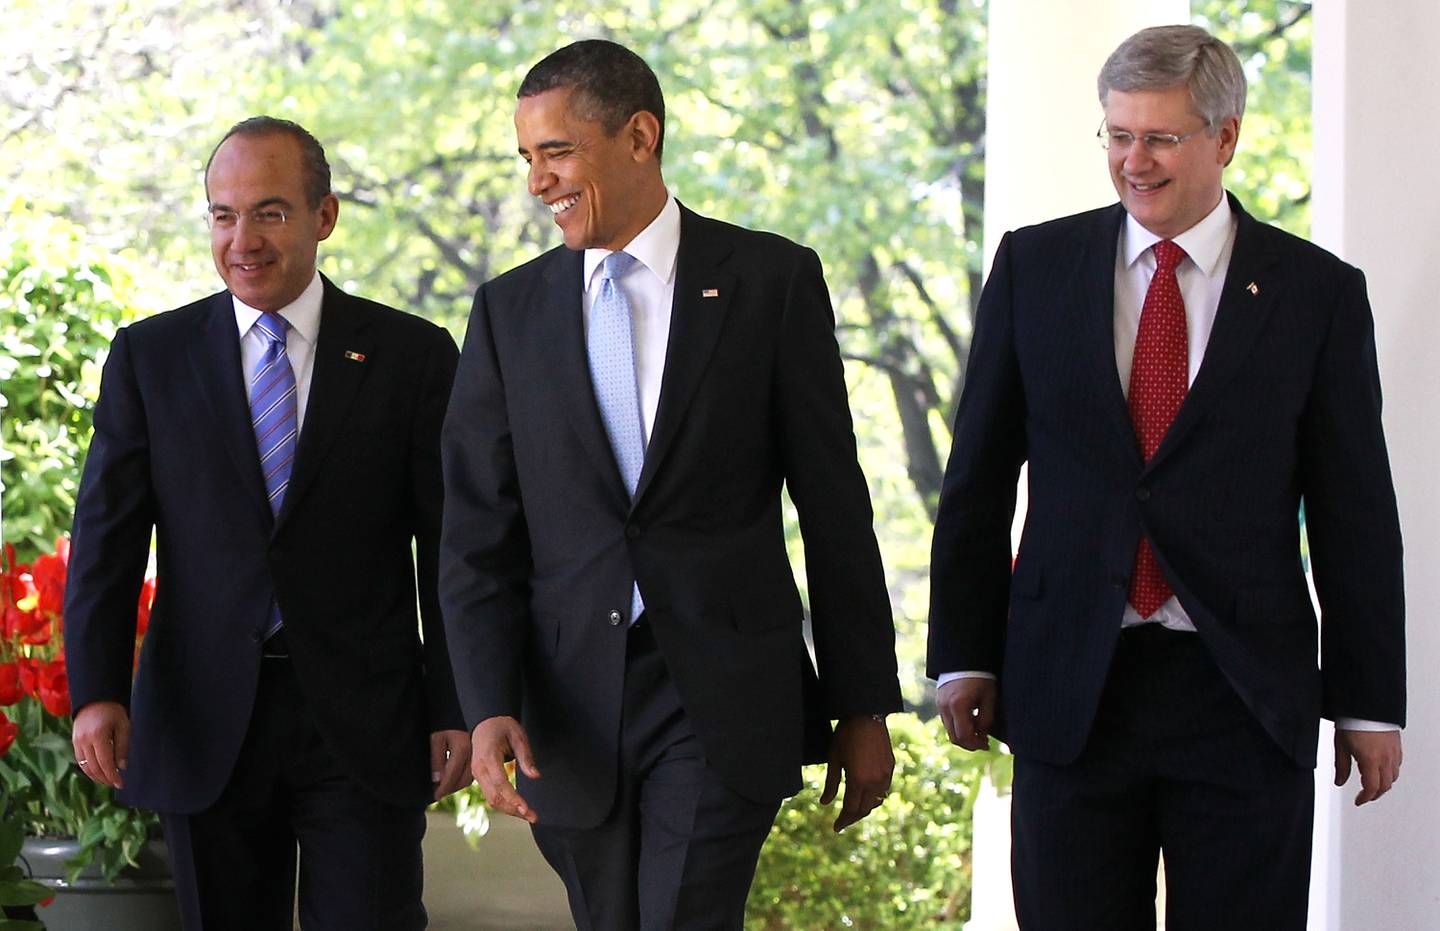 WASHINGTON, DC - 02 DE ABRIL: El presidente de Estados Unidos, Barack Obama (C), el primer ministro de Canadá, Stephen Harper (D), y el presidente de México, Felipe Calderón (I), salen del Despacho Oval para dar una conferencia de prensa conjunta en el Jardín de las Rosas de la Casa Blanca el 2 de abril de 2012 en Washington, DC. Obama recibió a sus homólogos de Canadá y México para la Cumbre de Líderes de América del Norte (NALS, por sus siglas en inglés) con conversaciones sobre la cooperación entre los tres países, el papel de América del Norte en las Américas, así como otros asuntos económicos, políticos y de seguridad globales, según un comunicado de prensa de la Casa Blanca.  (Foto de Alex Wong/Getty Images)